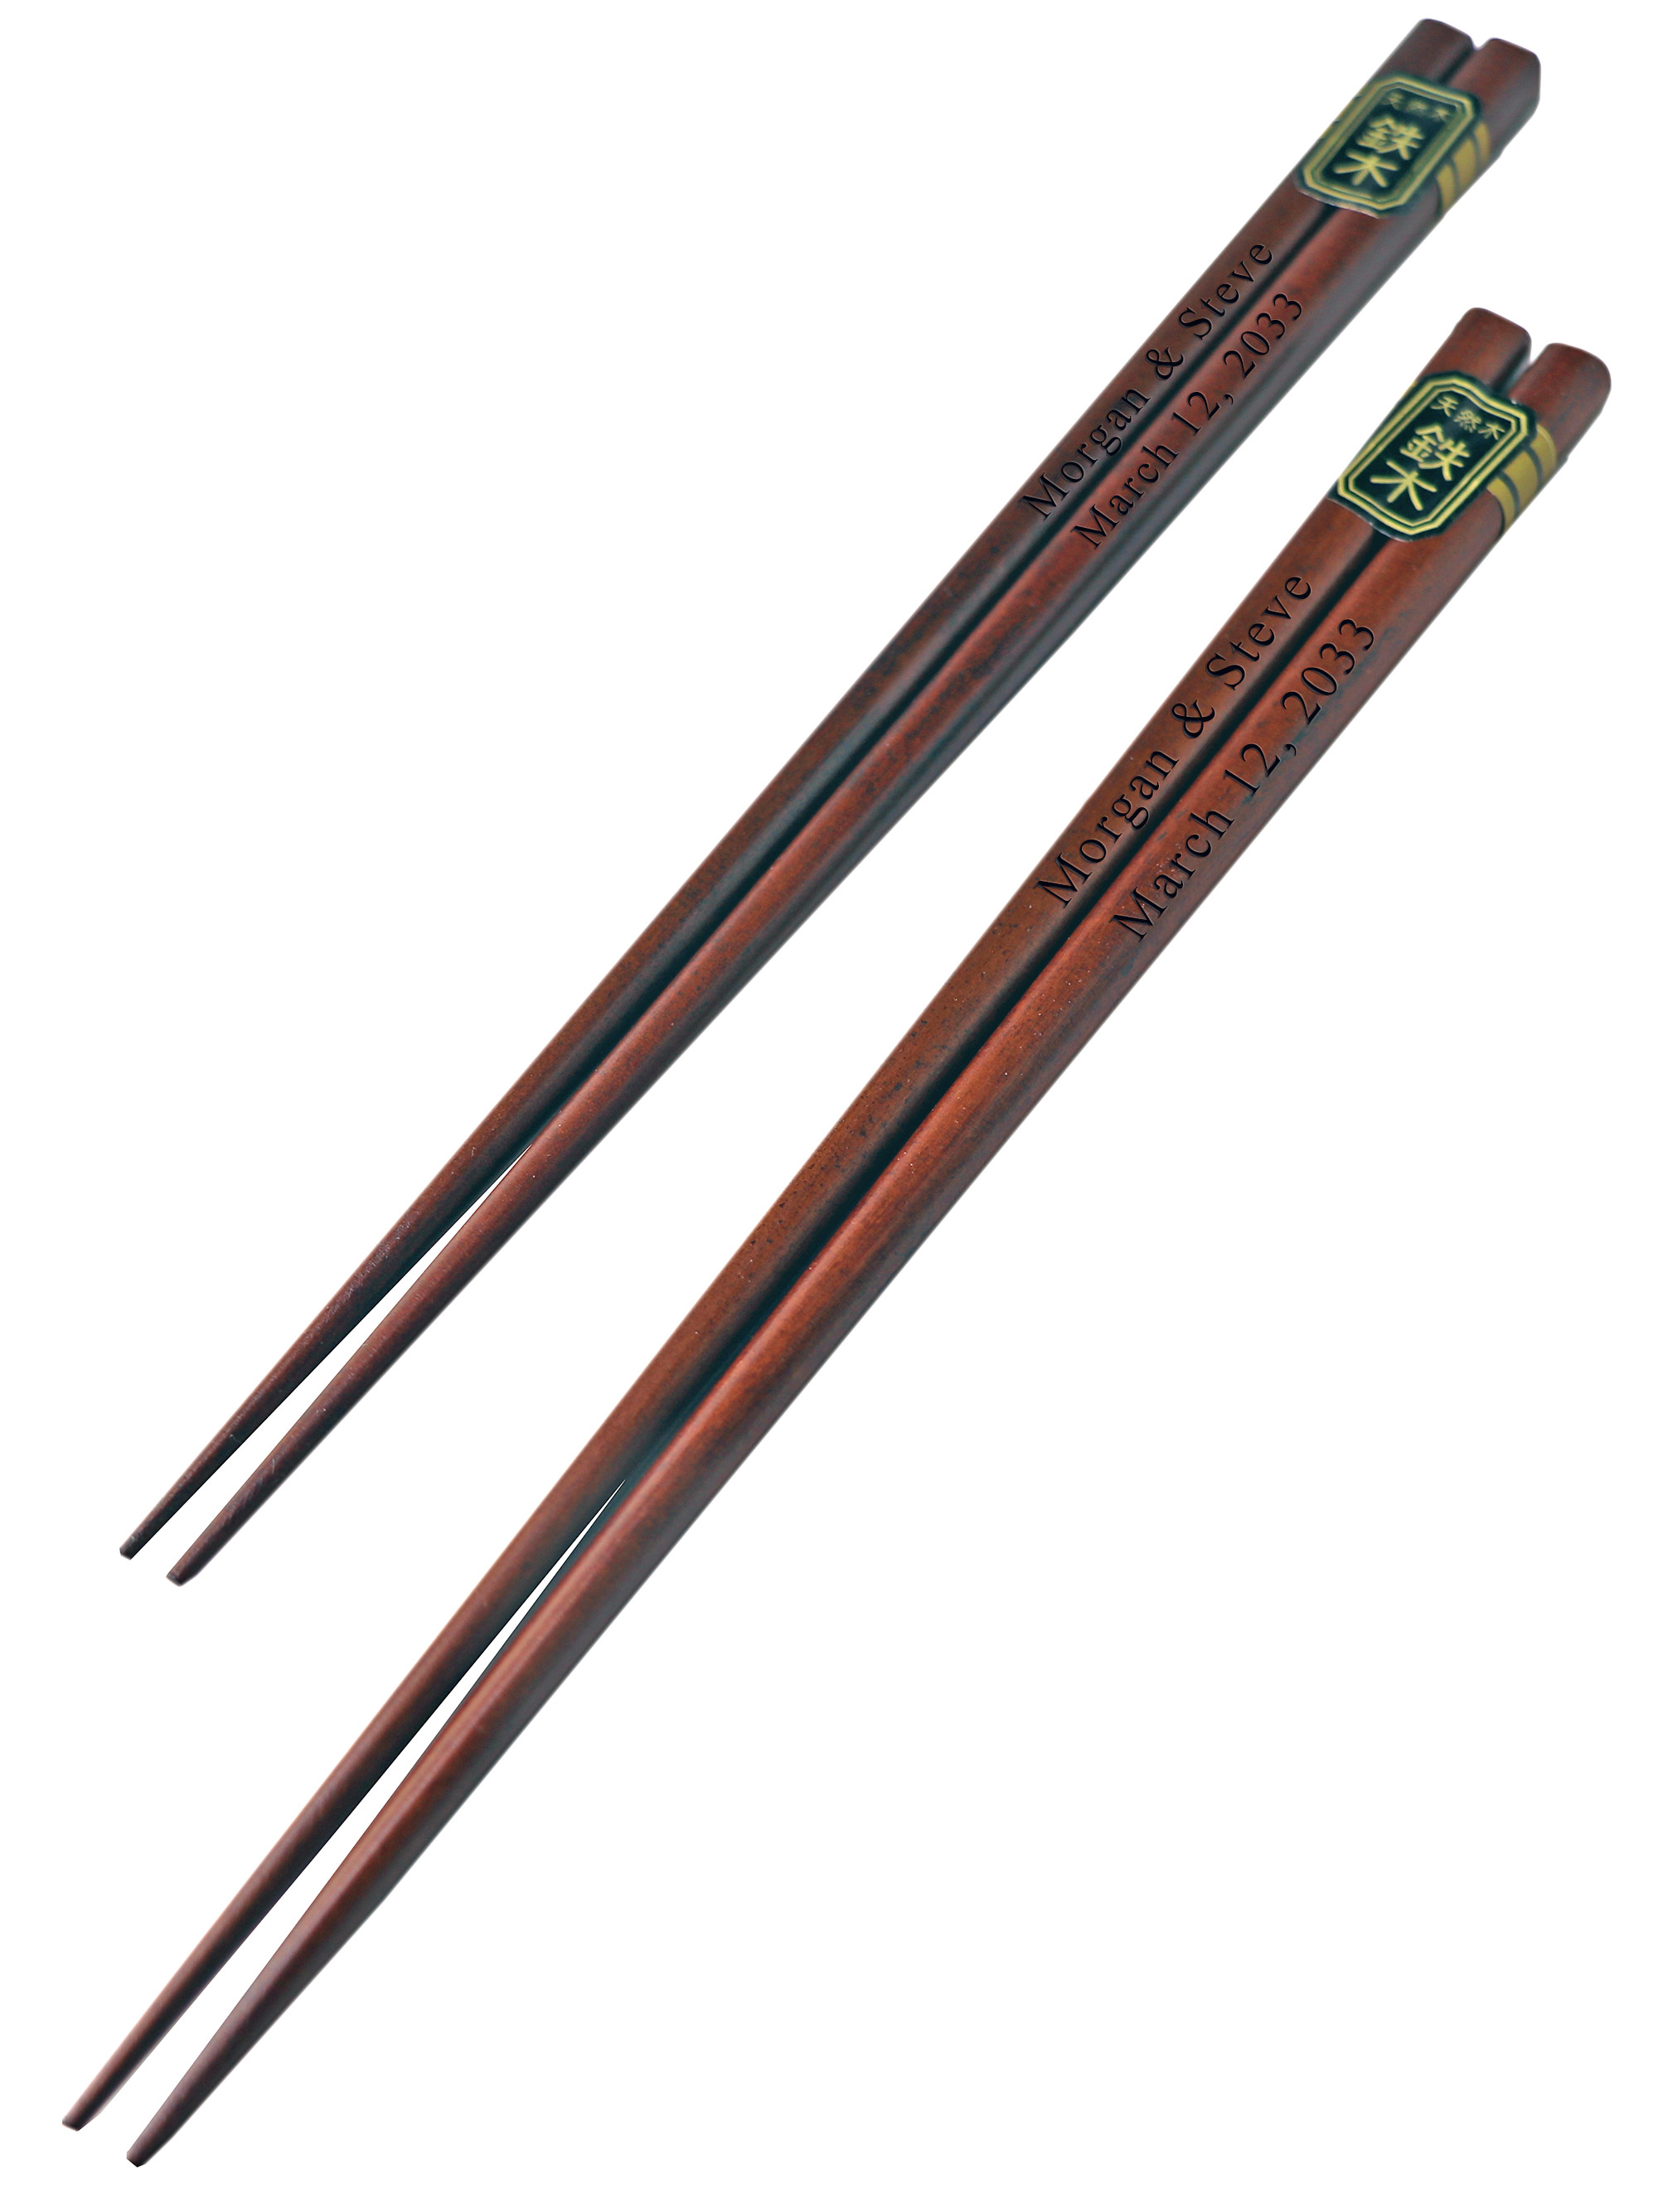 custom made chopsticks